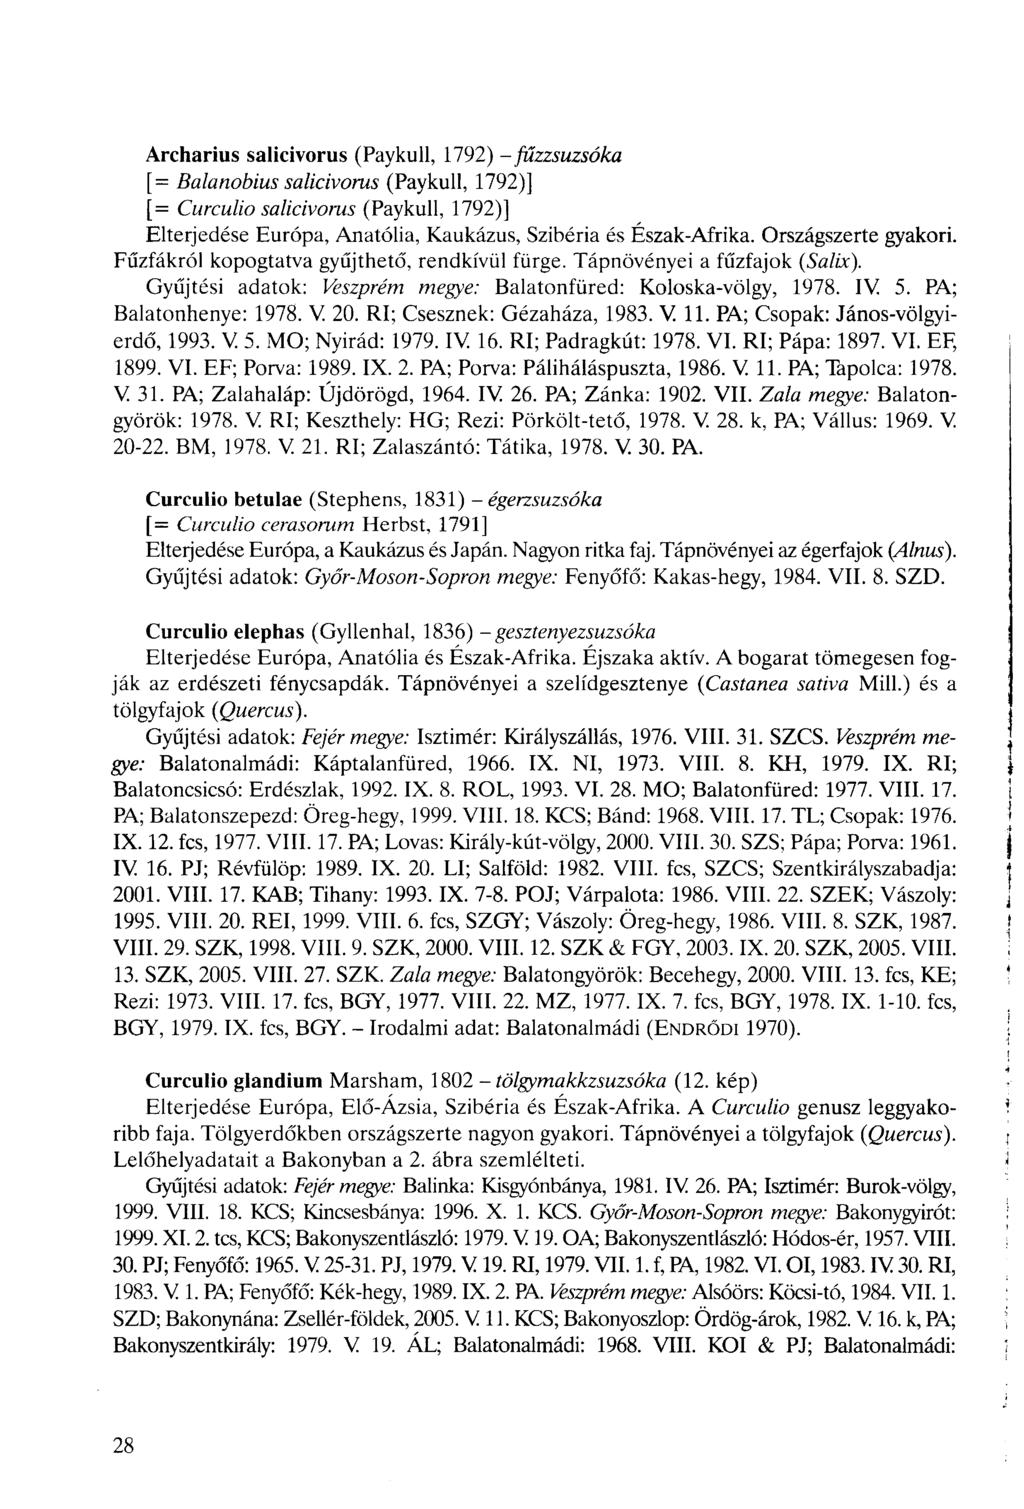 Archarius salicivorus (Paykull, 1792) -füzzsuzsóka [= Balanobius salicivorus (Paykull, 1792)] [= Curculio salicivorus (Paykull, 1792)] Elterjedése Európa, Anatólia, Kaukázus, Szibéria és Észak-Afrika.